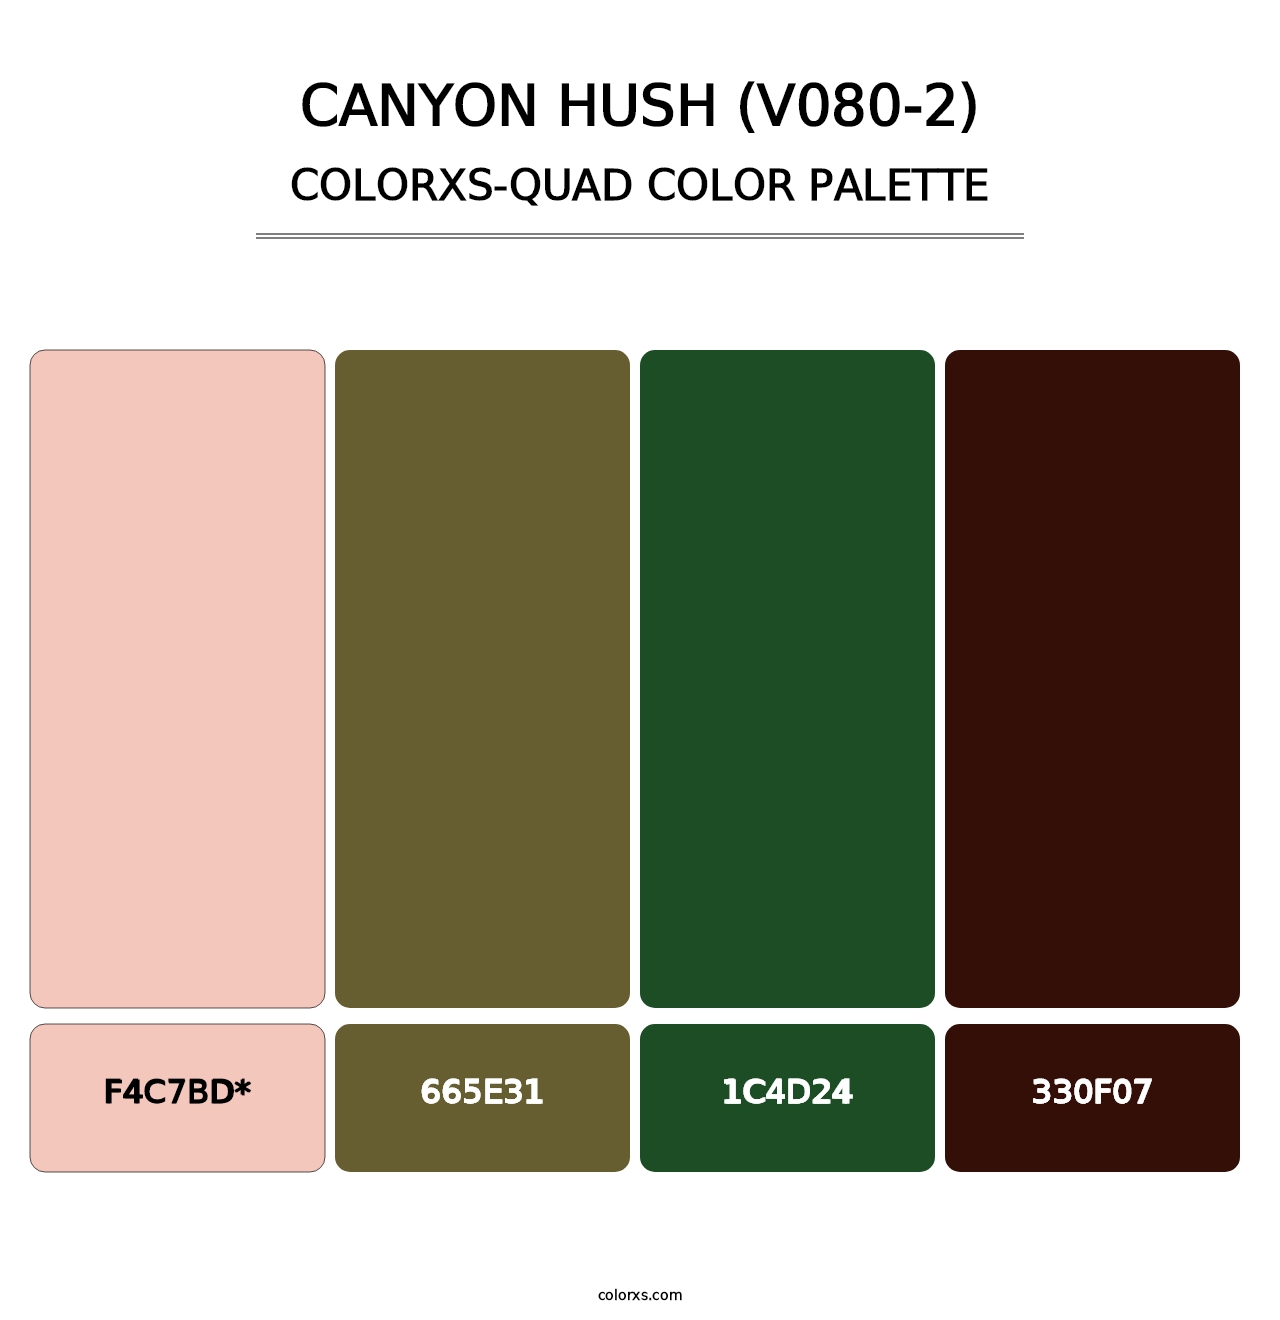 Canyon Hush (V080-2) - Colorxs Quad Palette